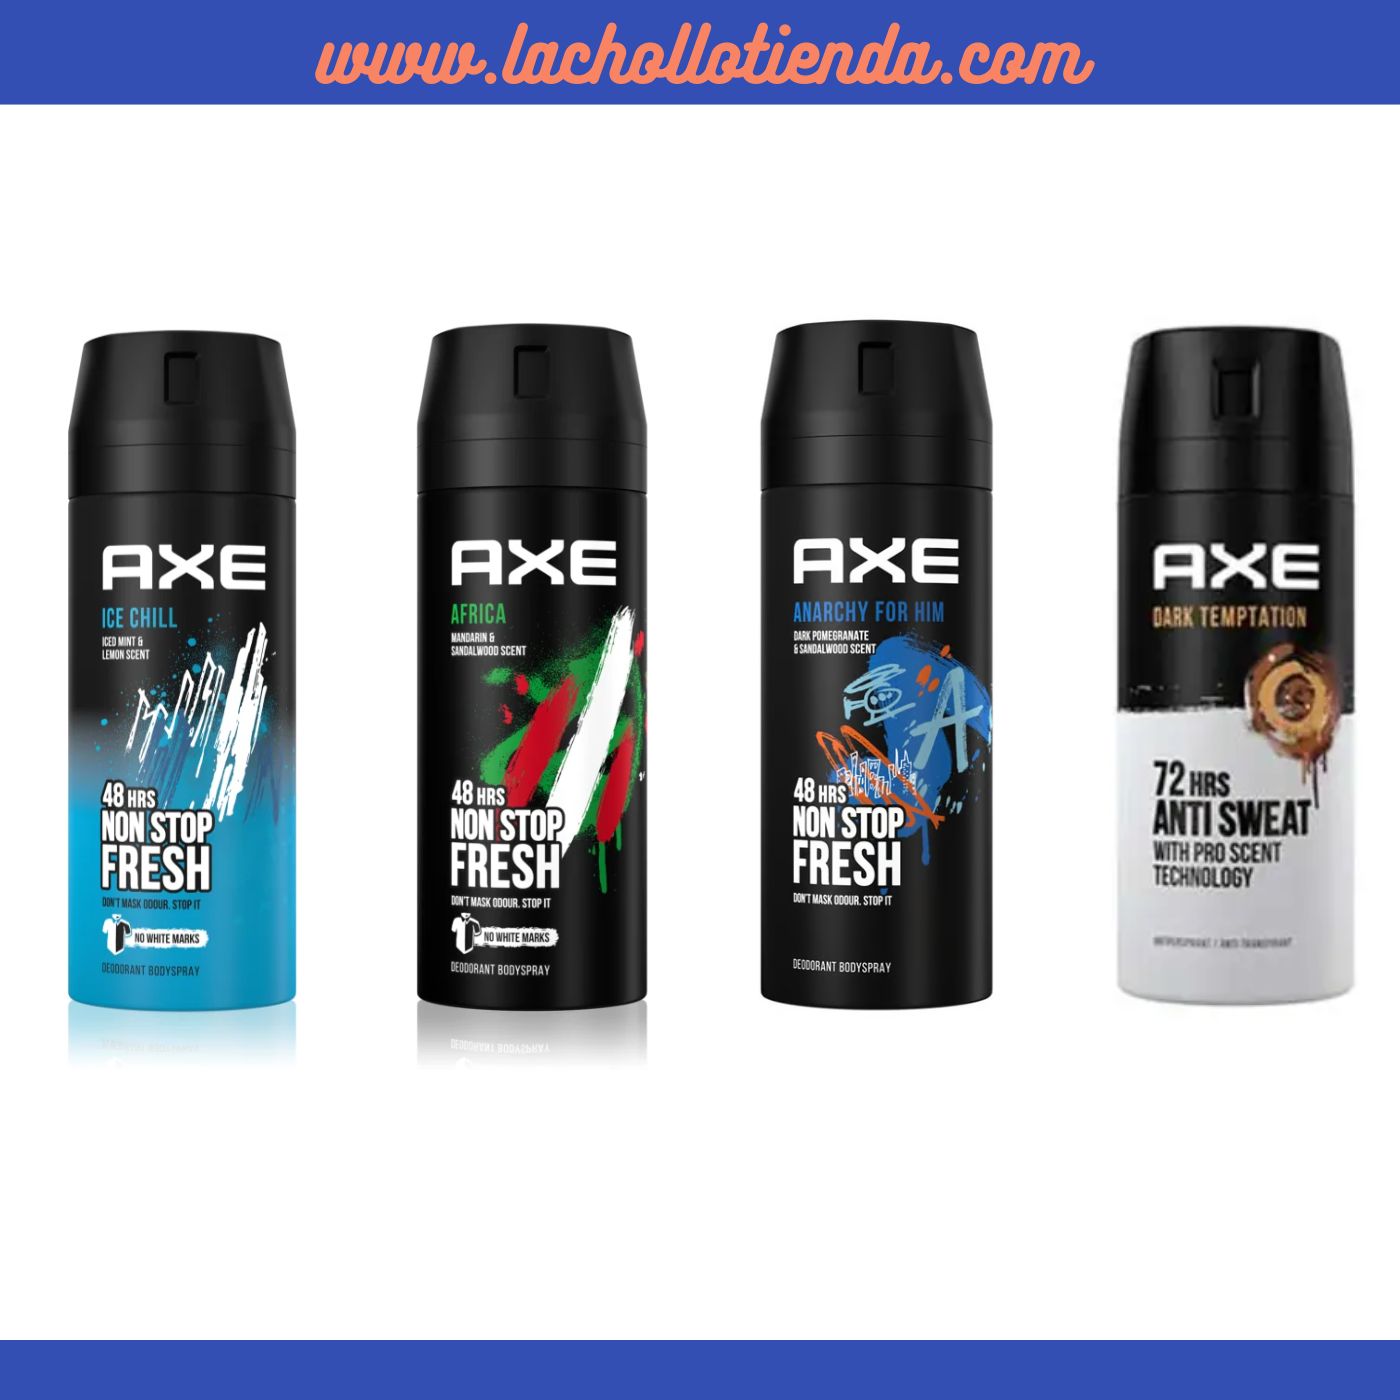 Lote Surtido AXE Desodorante Para Hombre-   4 X 150ml -  AXE Ice Chill - AXE Africa - AXE Anarchy - AXE Dark Temtation 72h